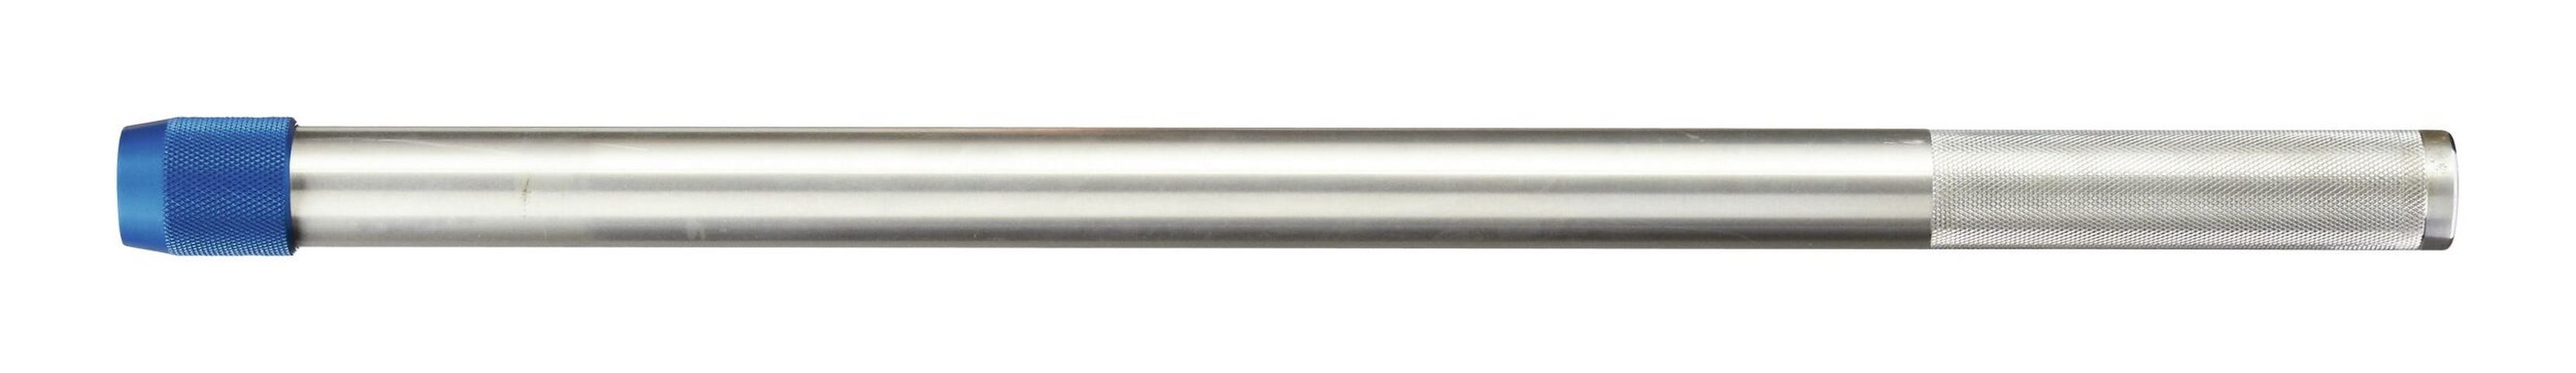 Gedore Drehmomentschlüssel, Aufsteckrohr Aluminium für Drehmomentschlüssel Dremometer 762 mm